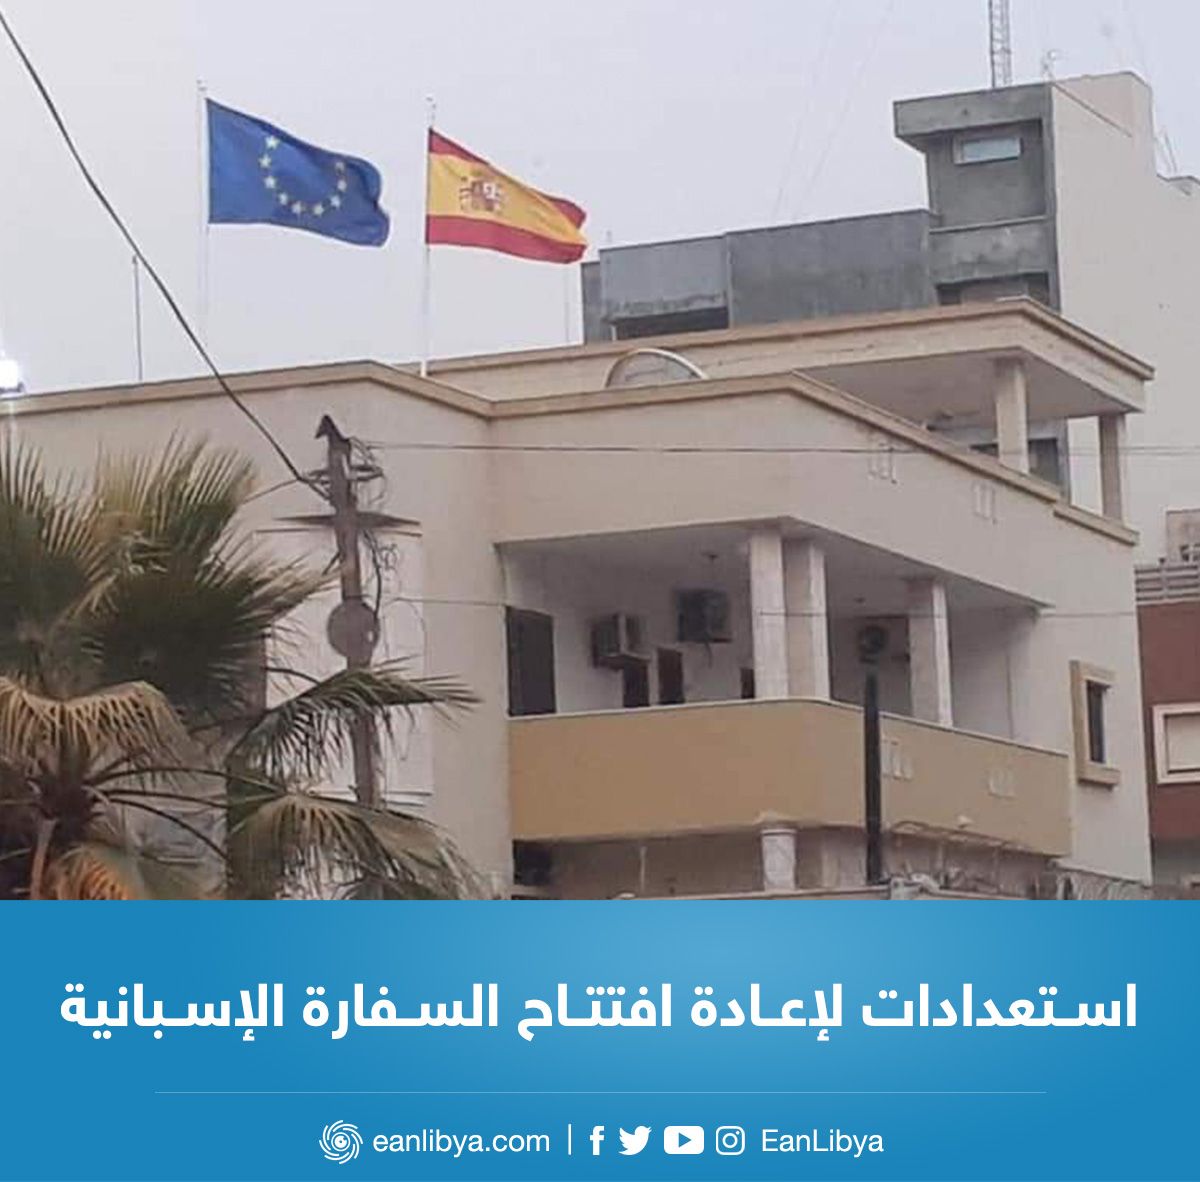  السفارة الإسبانية في ليبيا تنفي إصدار أمر إجلاء للمواطنين الإسبان في العاصمة طرابلس.